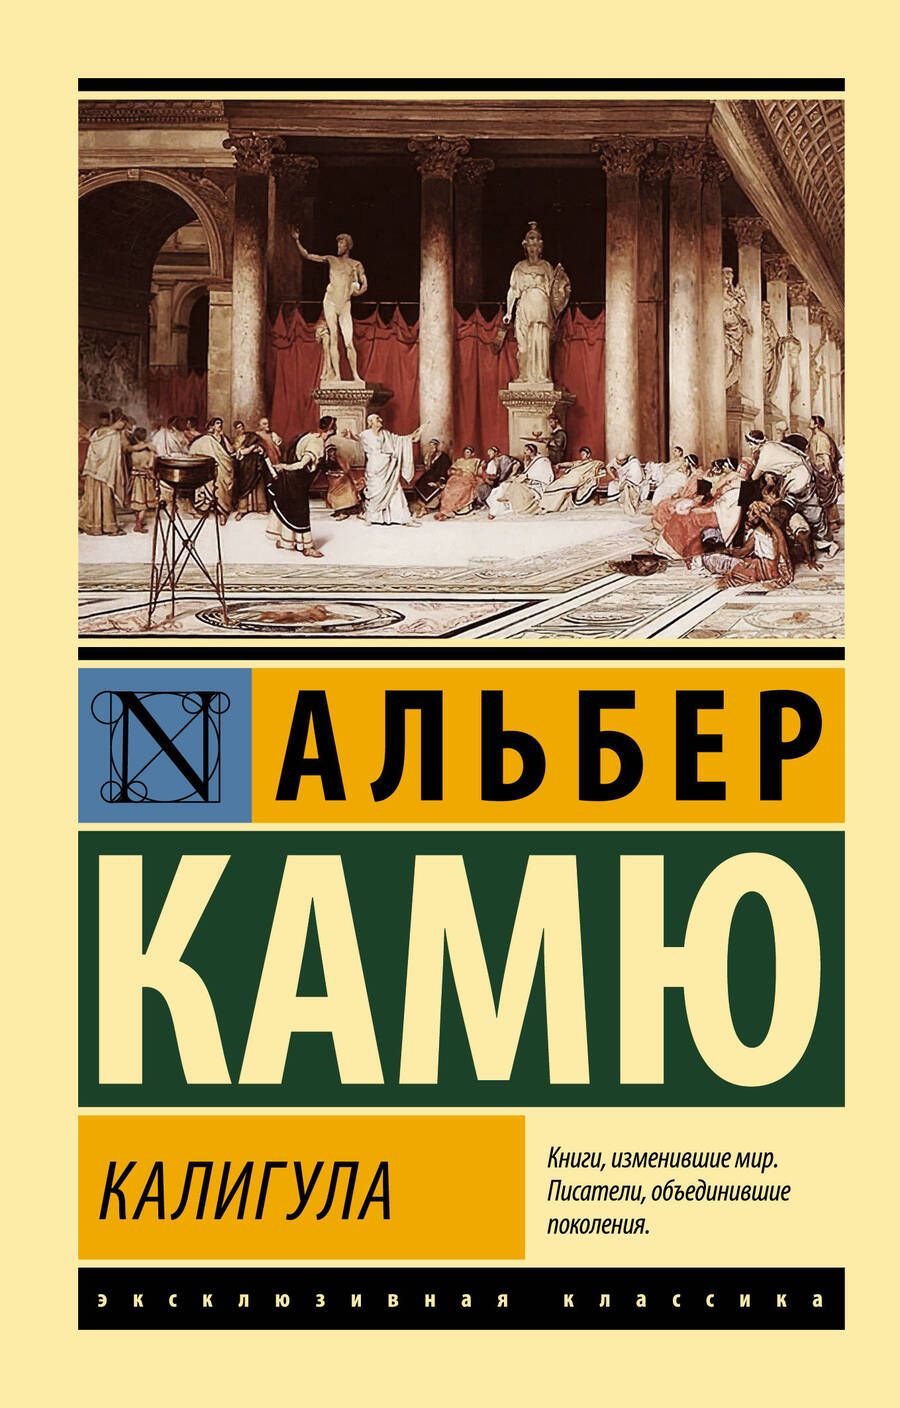 Обложка книги "Камю: Калигула"